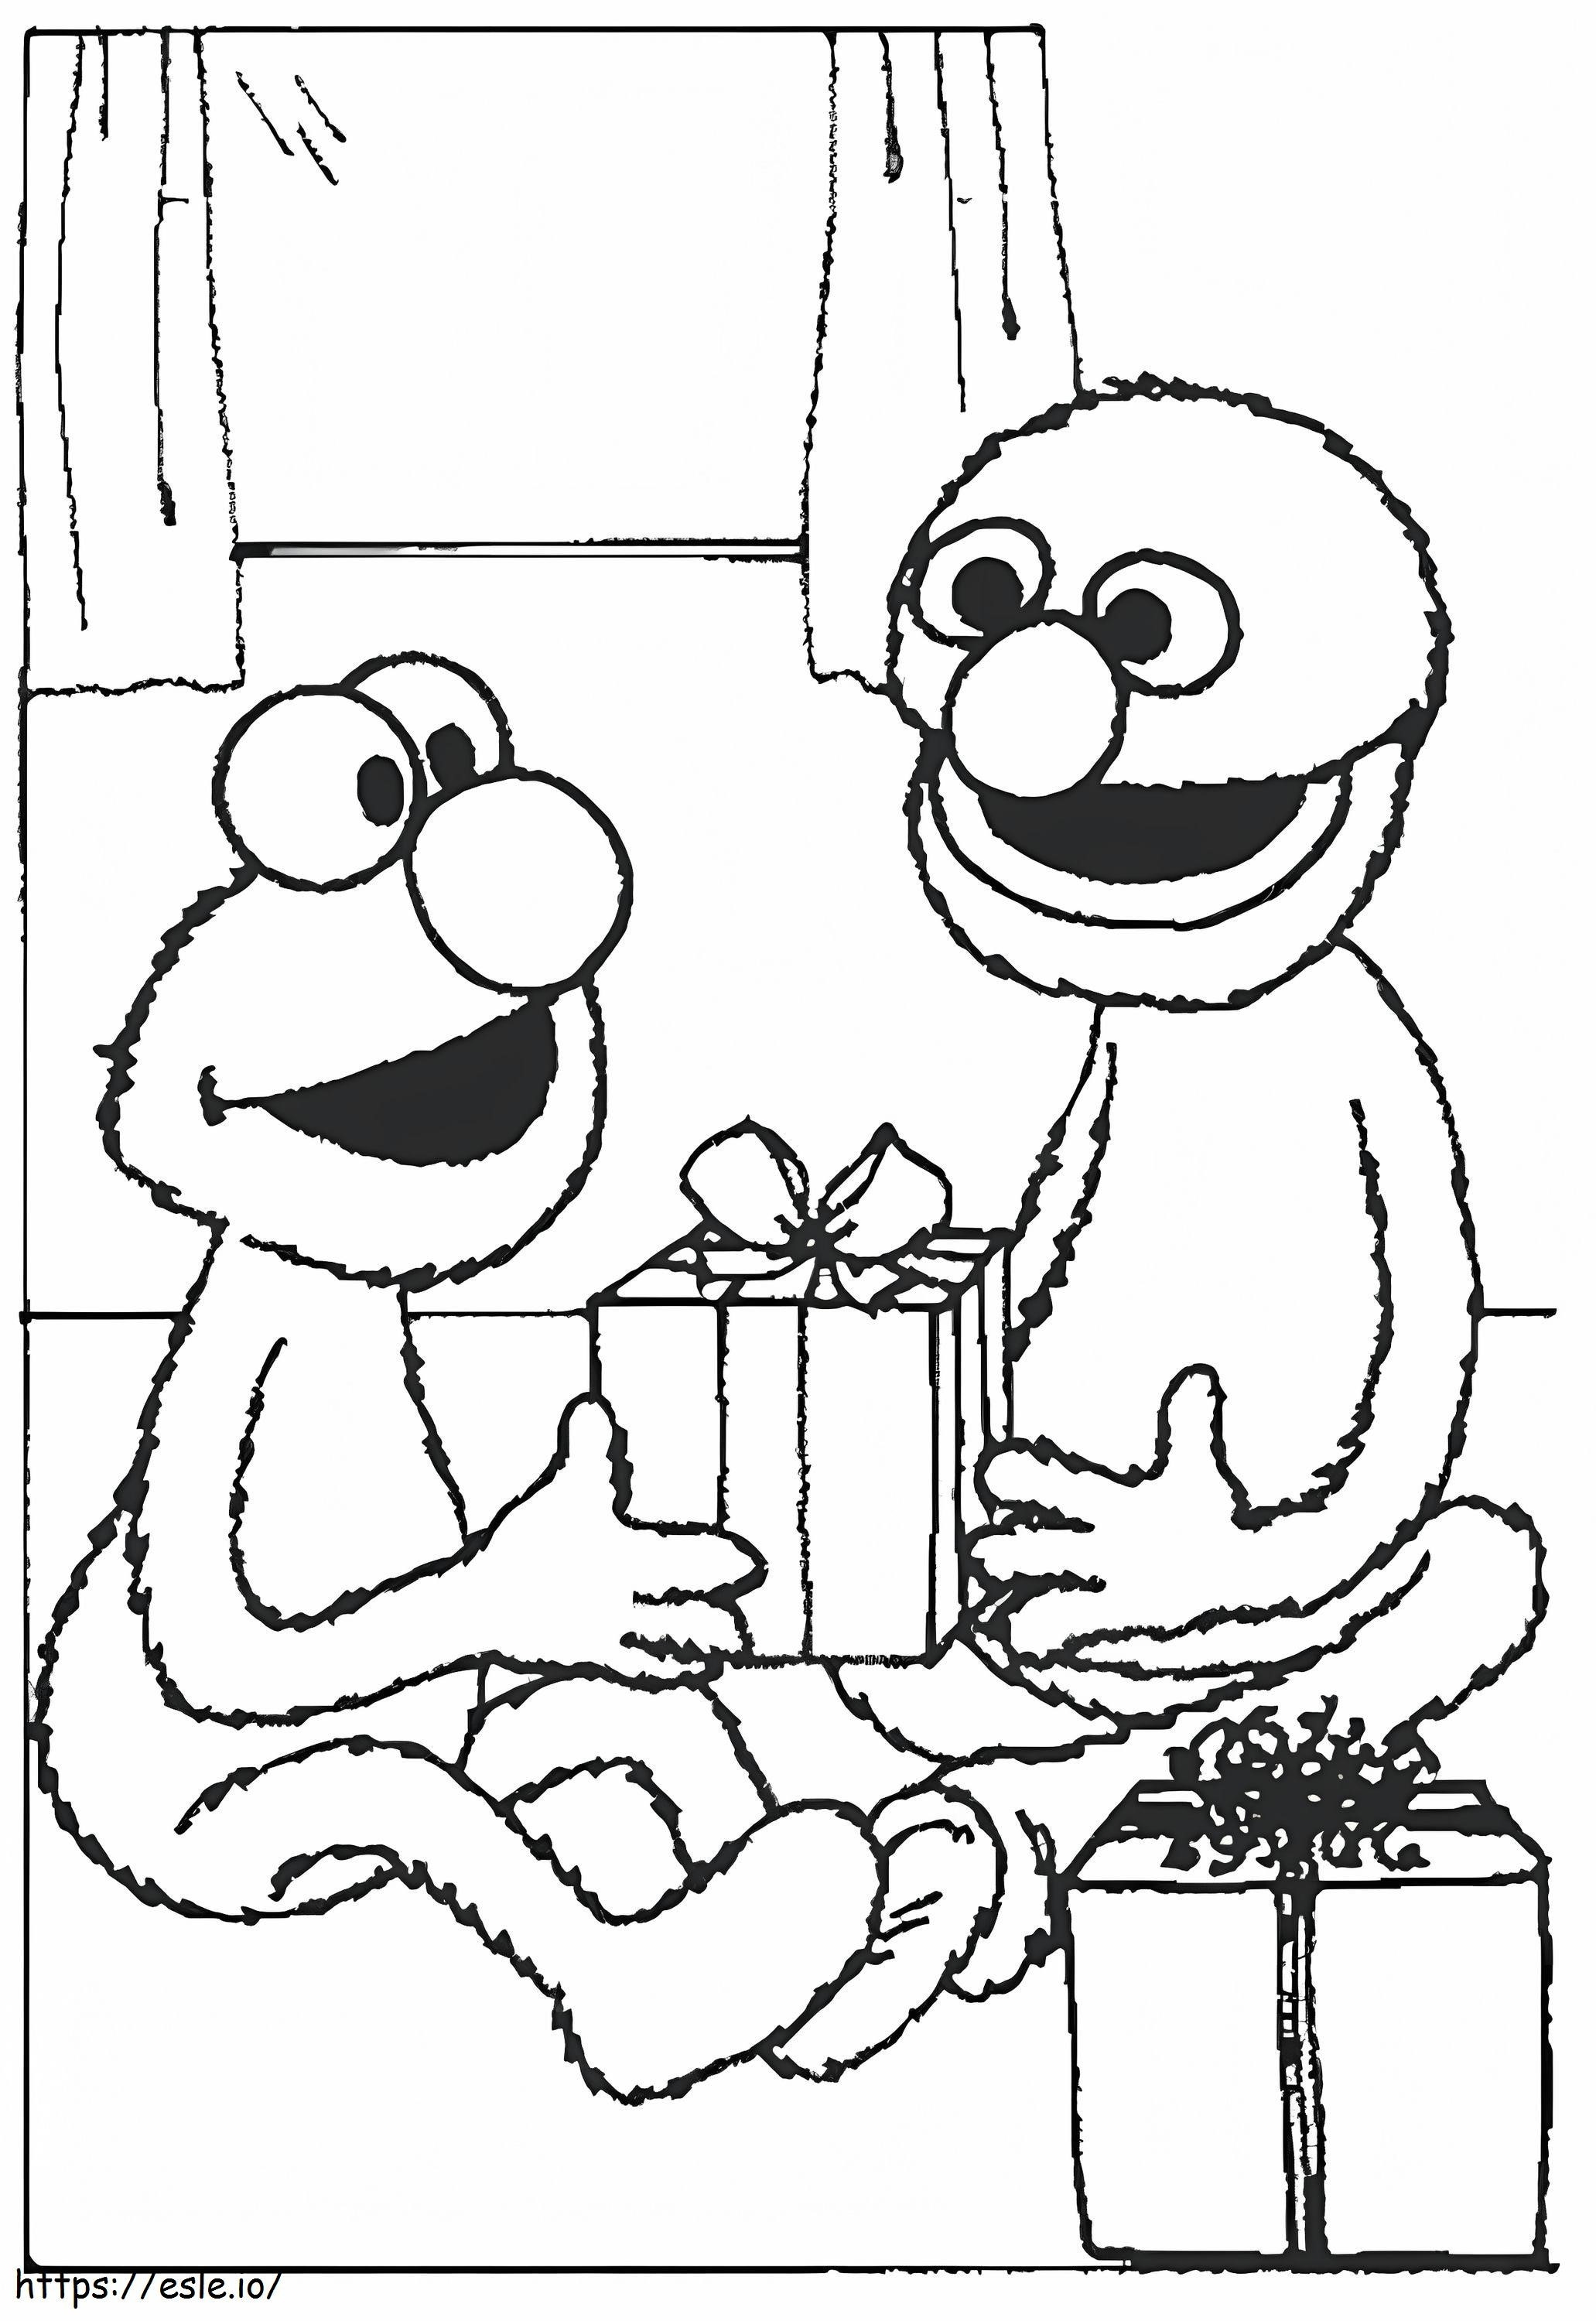 Elmo und Grover ausmalbilder